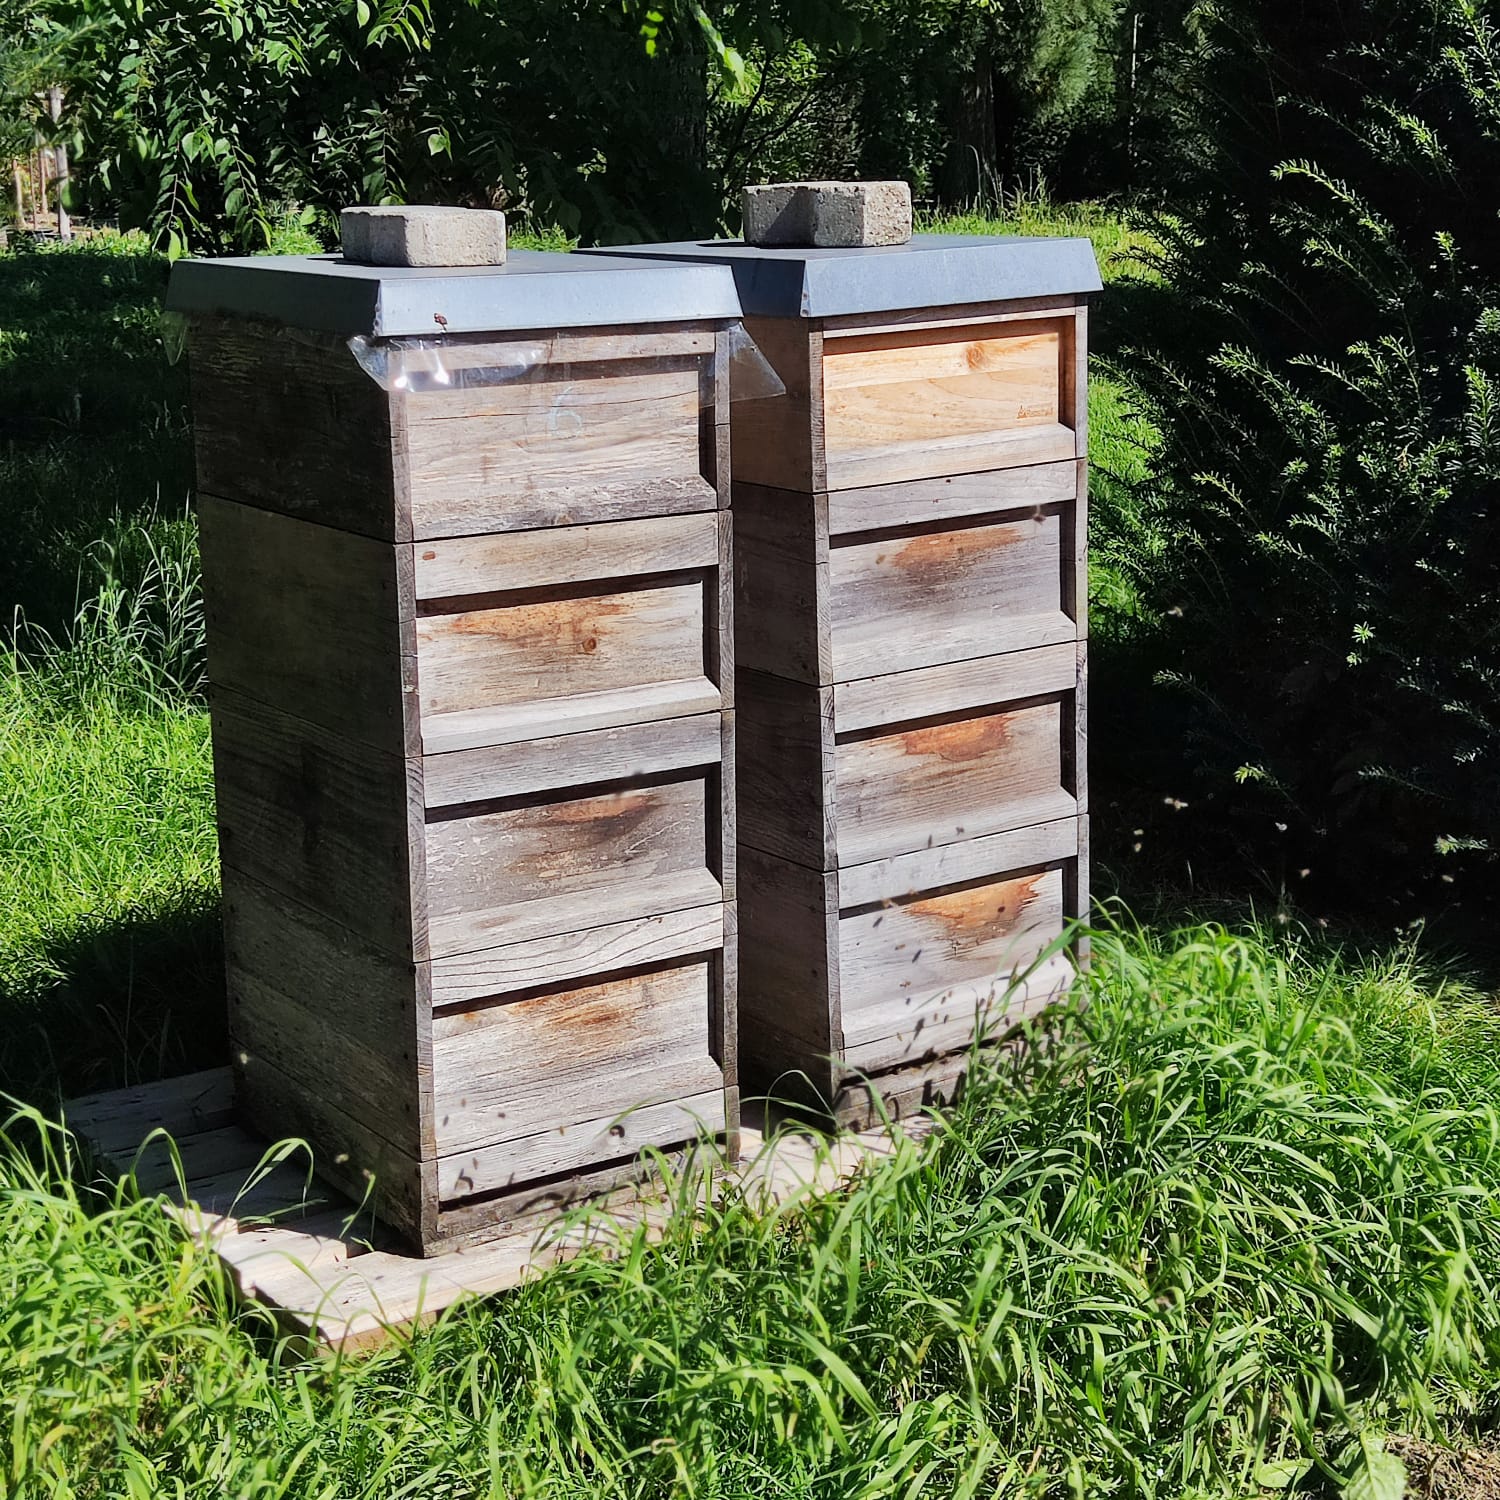 Neu bei uns: Bienenhonig aus der Baumschule!